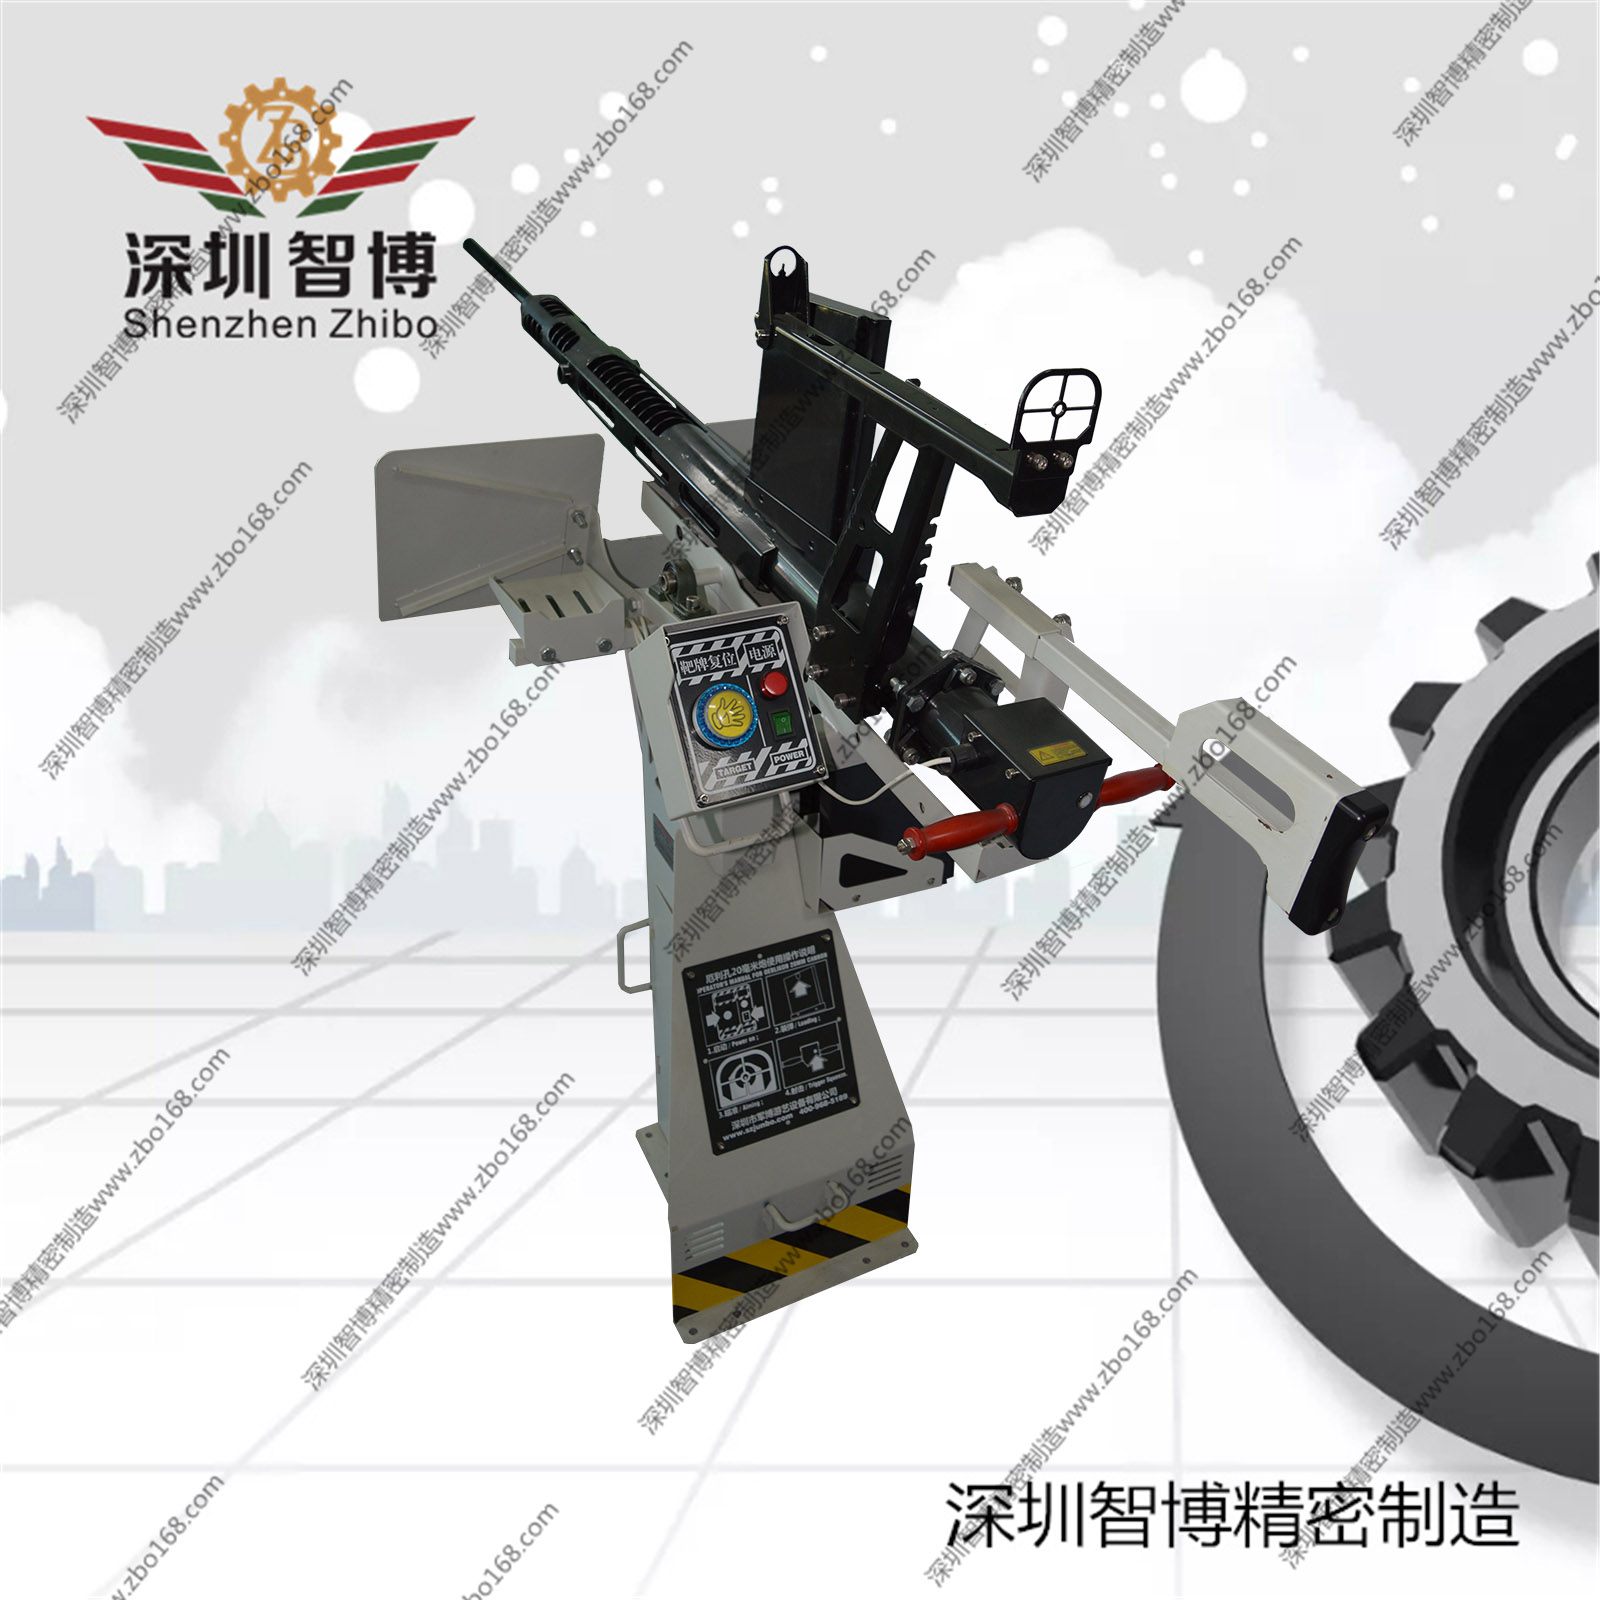 深圳市智博精密机械制造有限公司-厄利孔炮